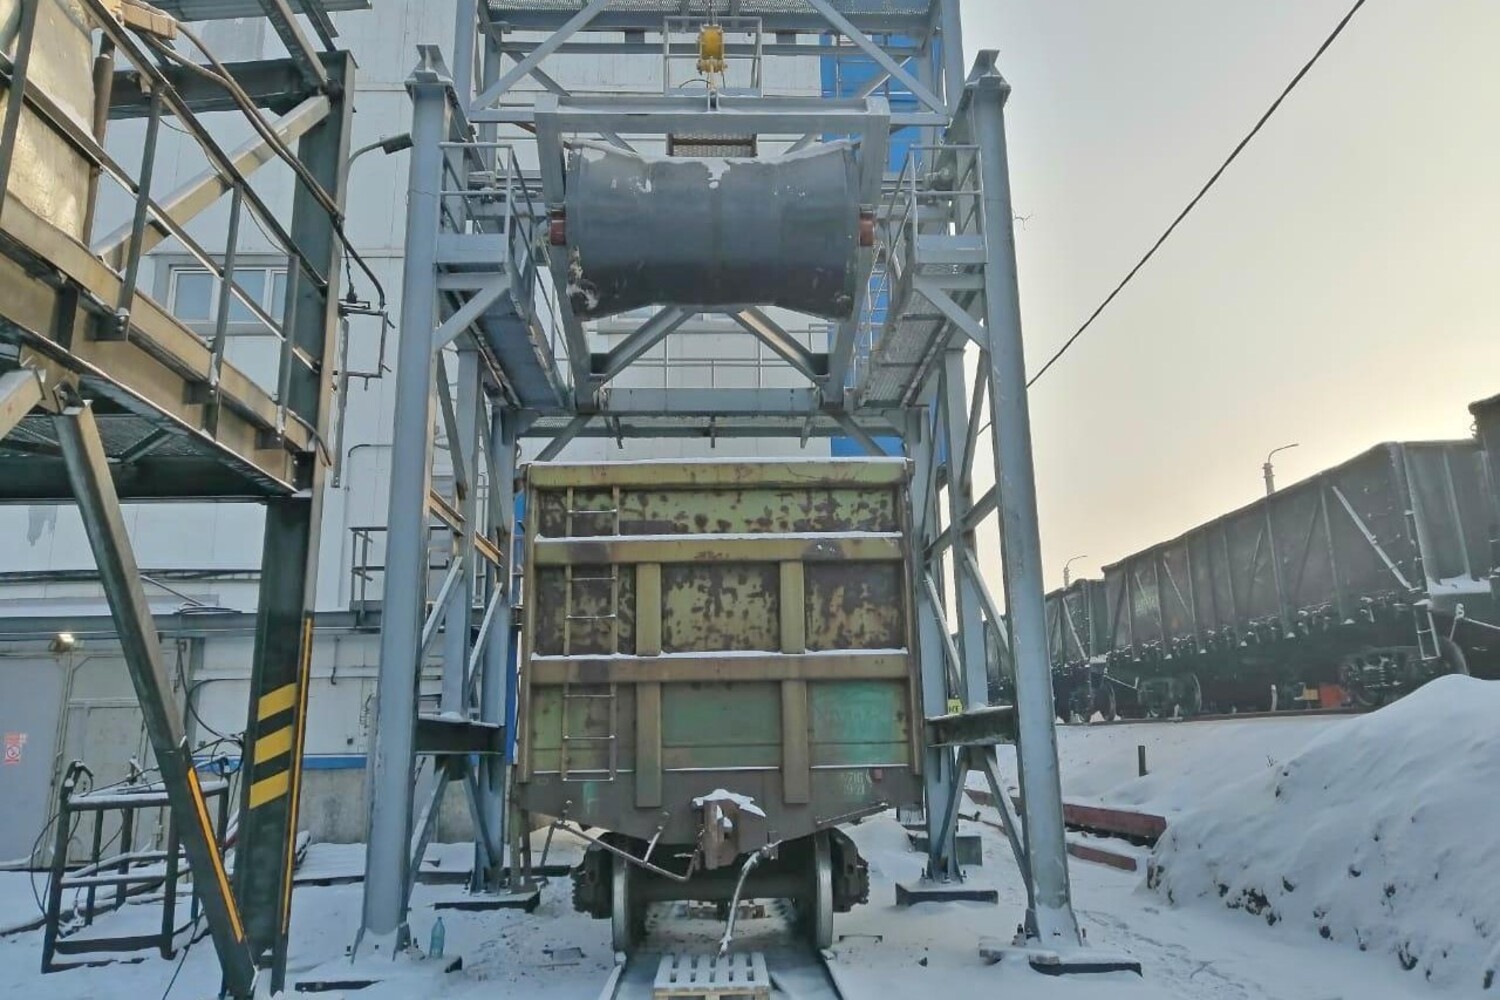 В Белтрансе изготовили металлоконструкцию для установки уплотнения и разравнивания угля Шахты №12. Стройсервис